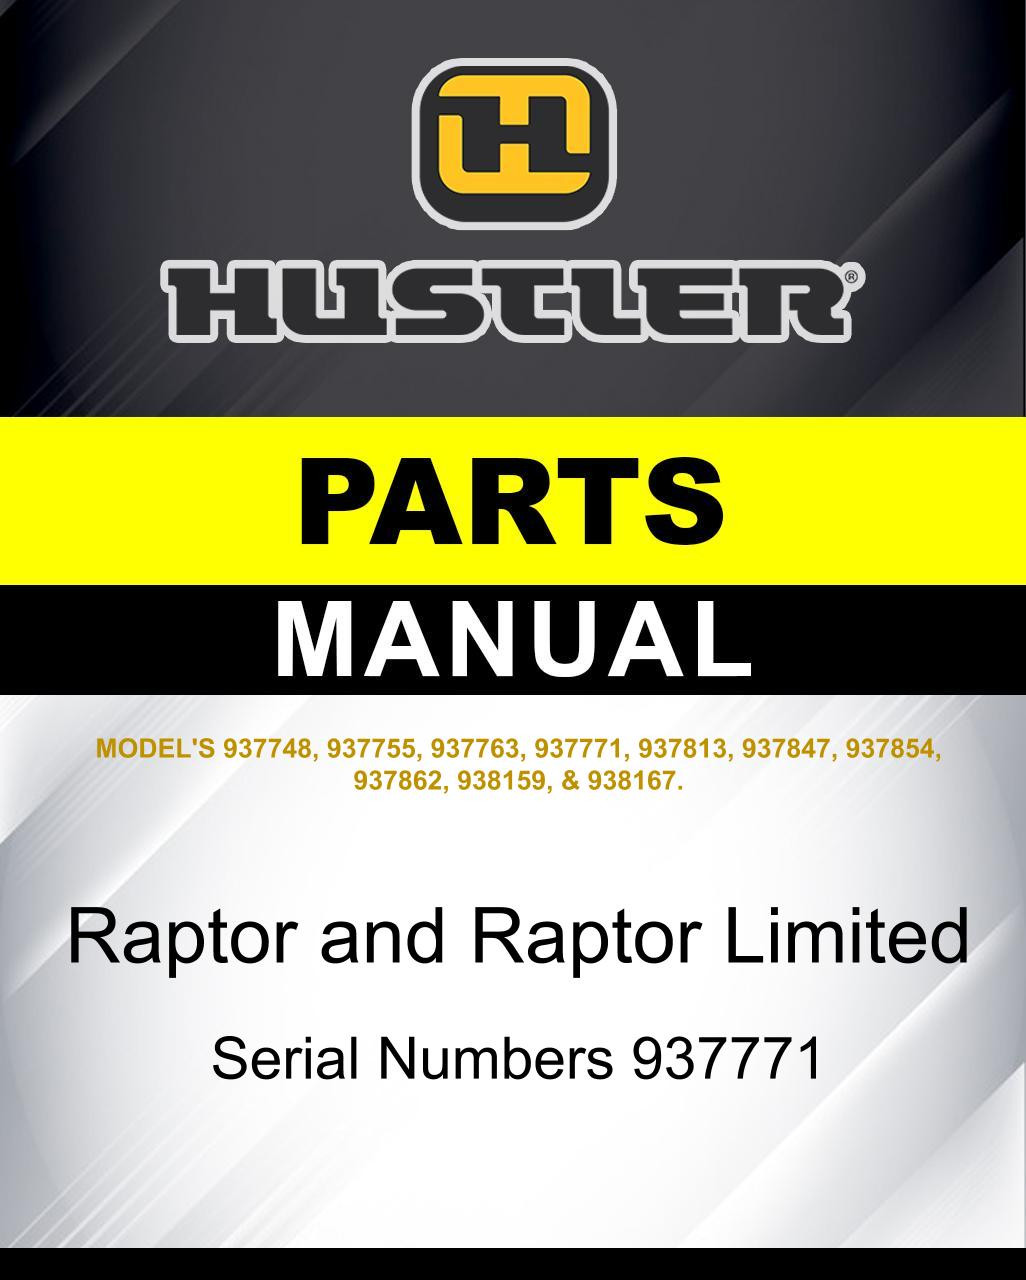 Hustler Raptor and Raptor Limited SN 937771 parts manual | Hustler 